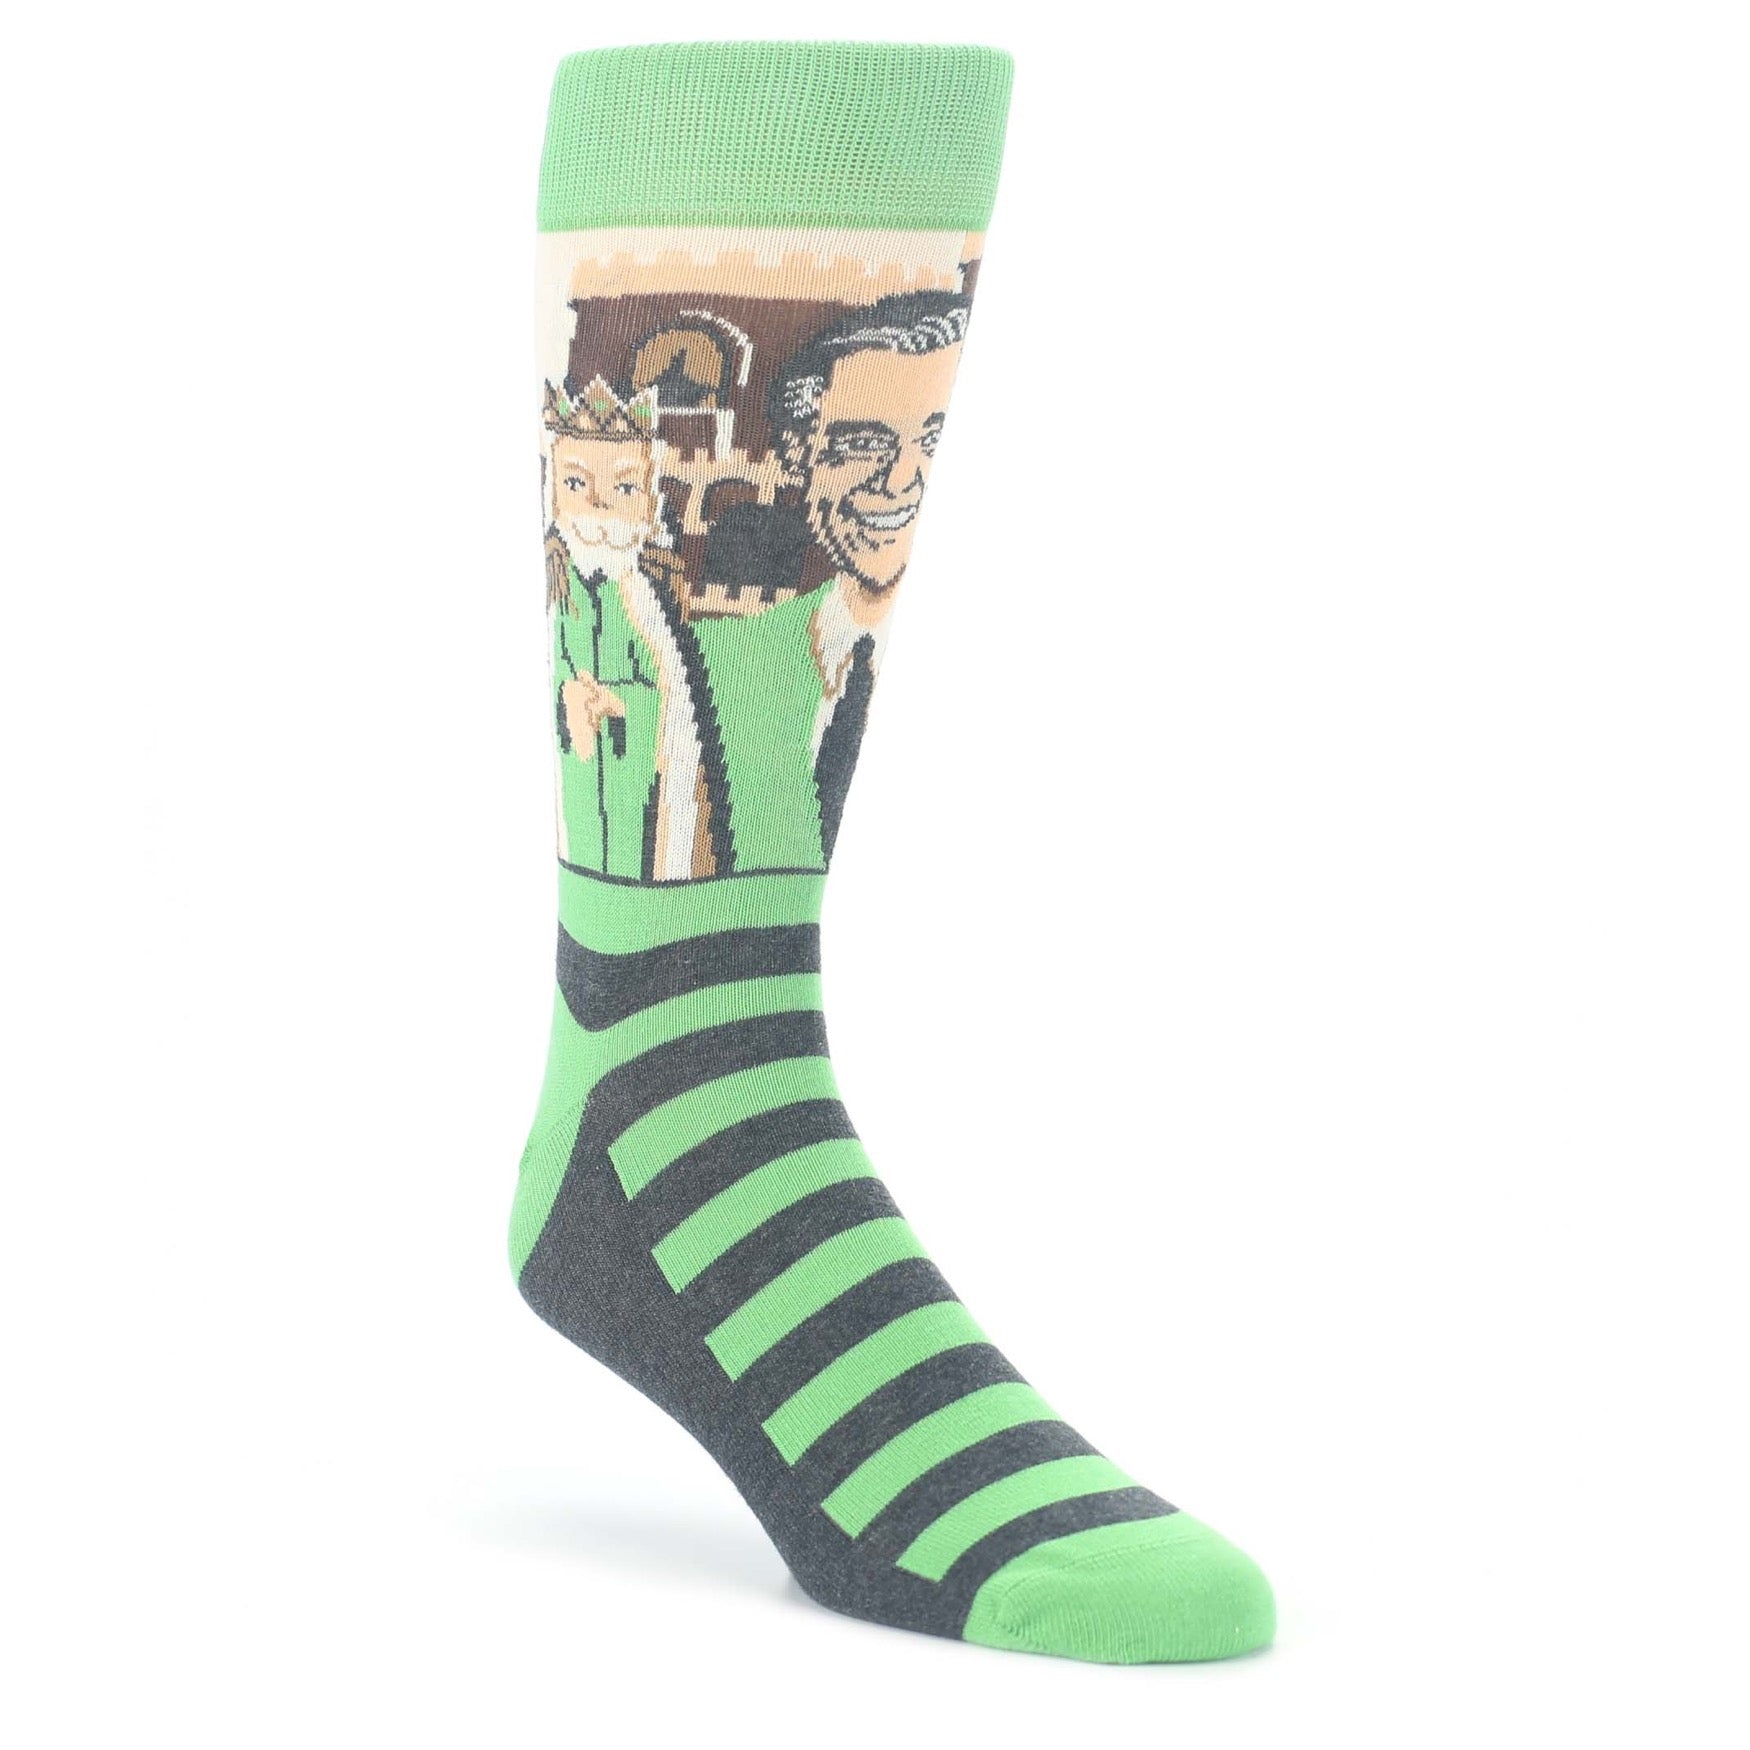 Mister Rogers Neighborhood Socks - Green Men's Dress Socks